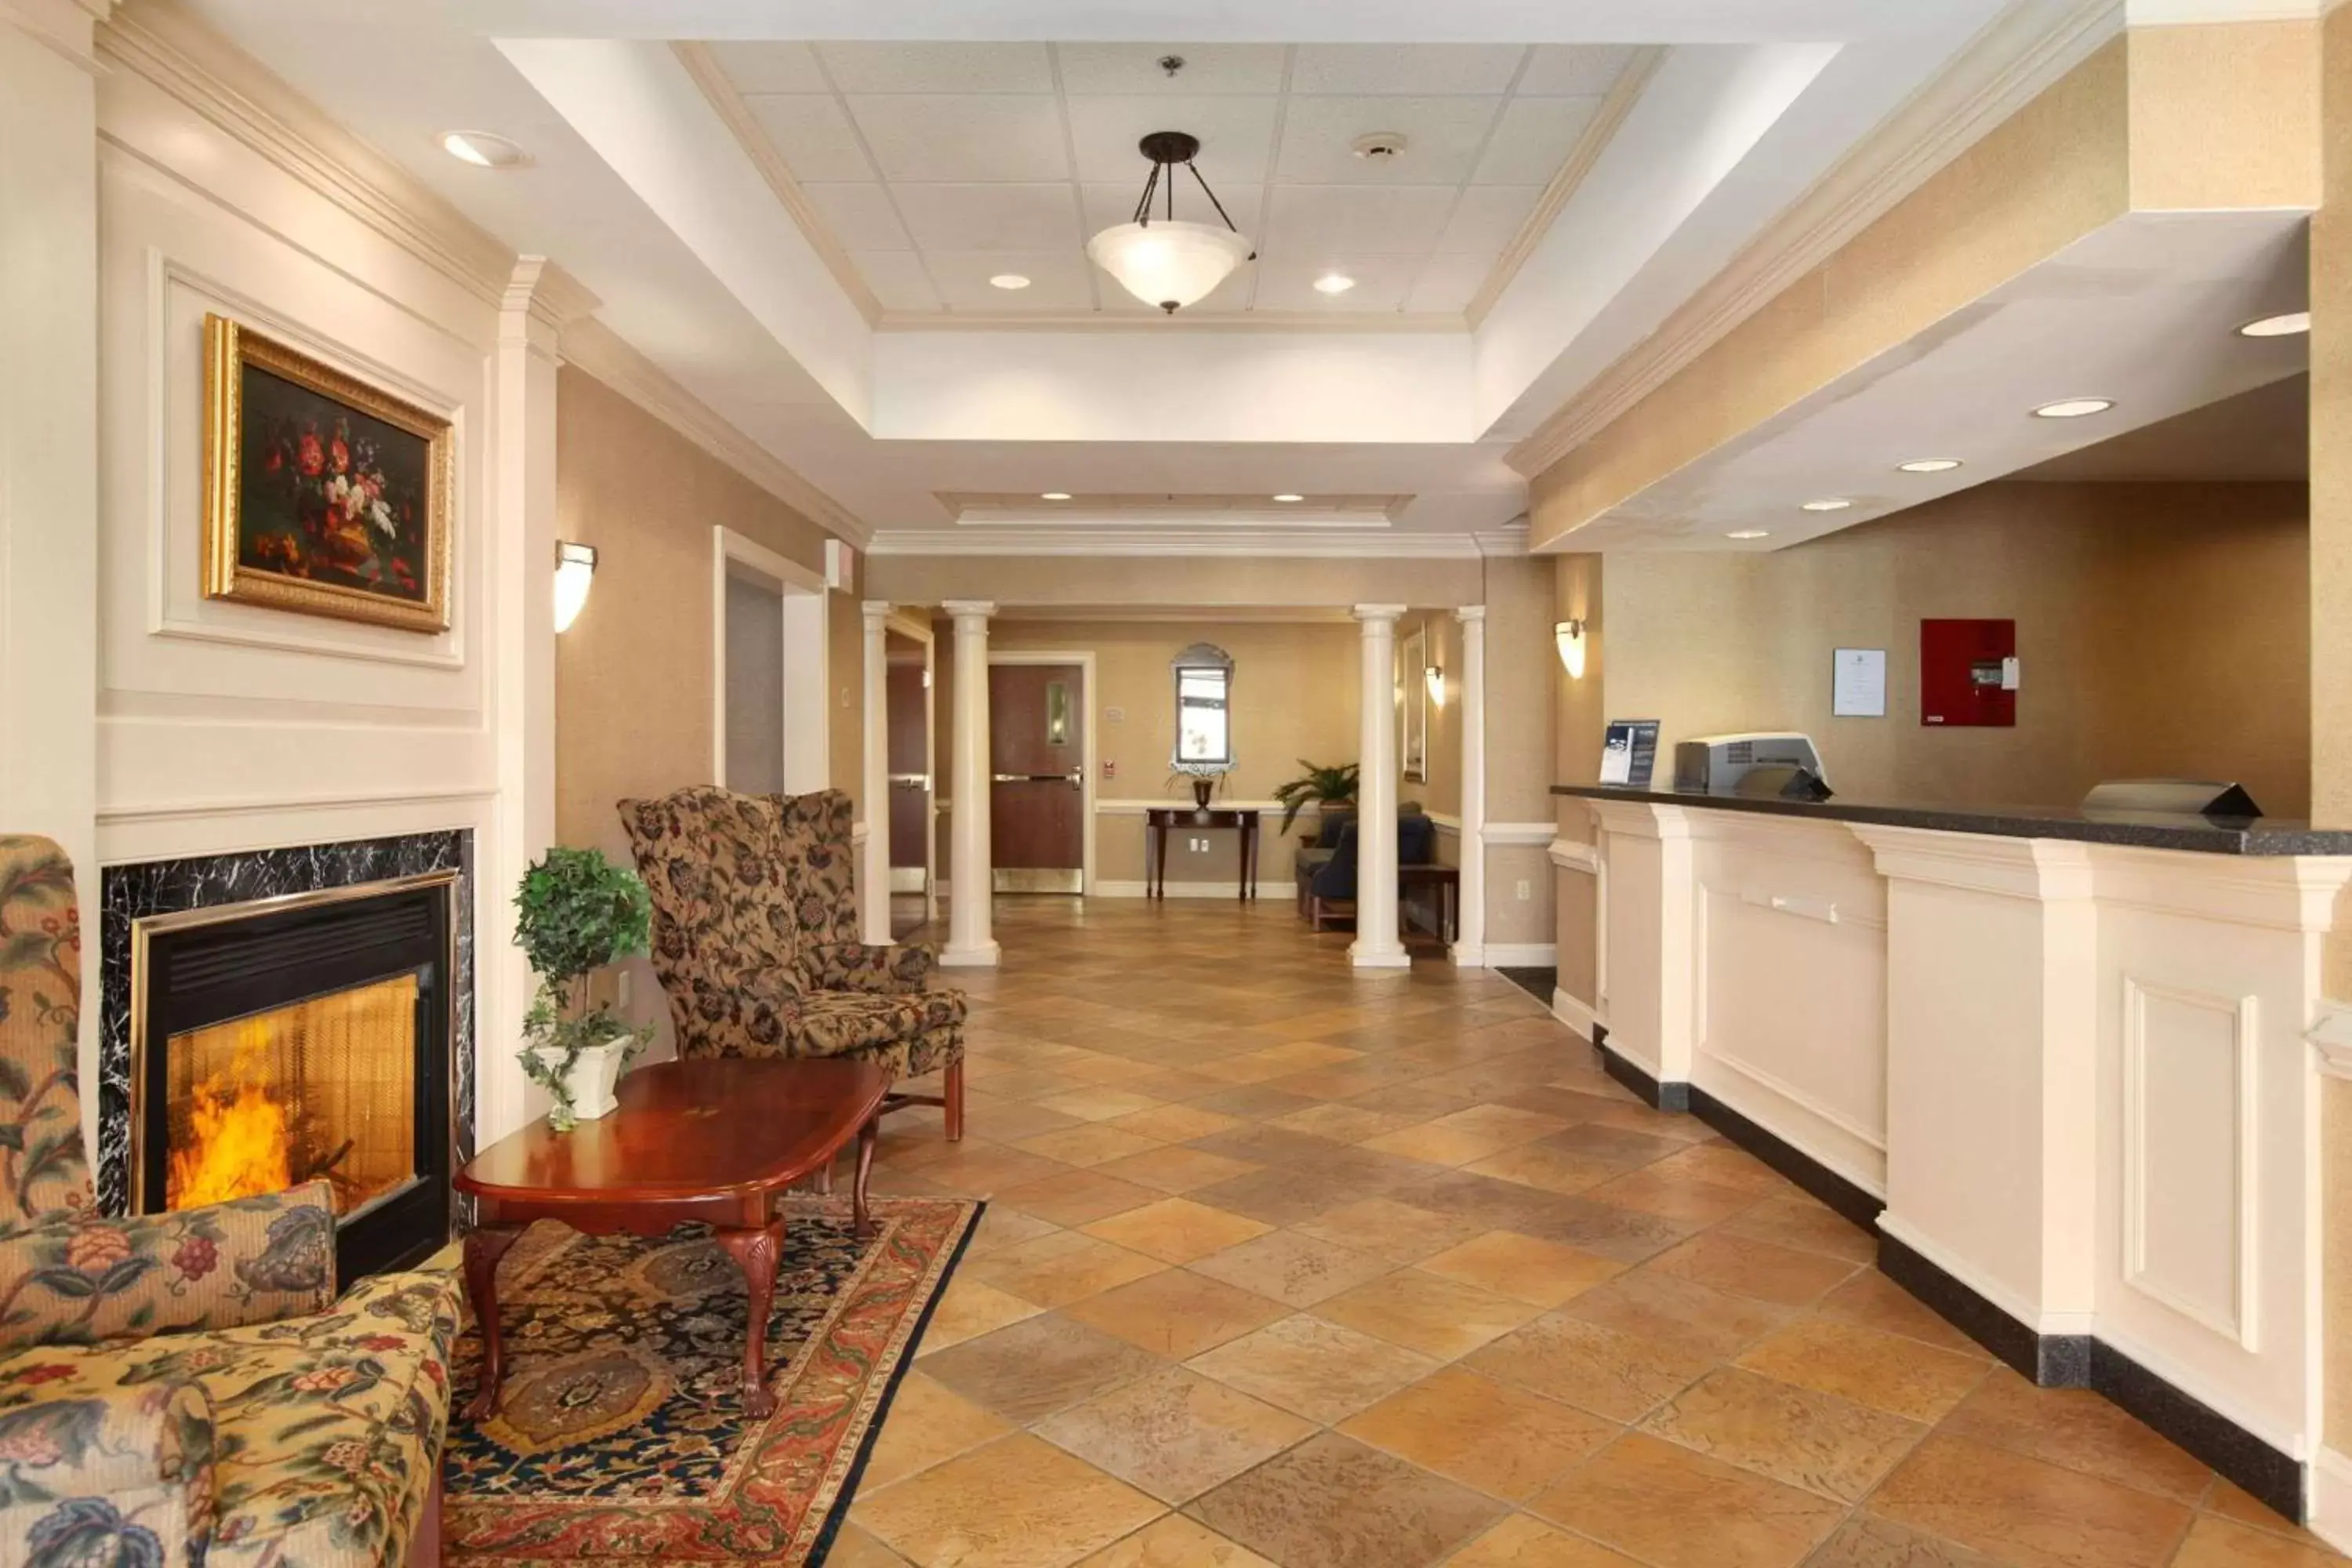 Lobby or reception, Lobby/Reception in Days Inn by Wyndham Alta Vista